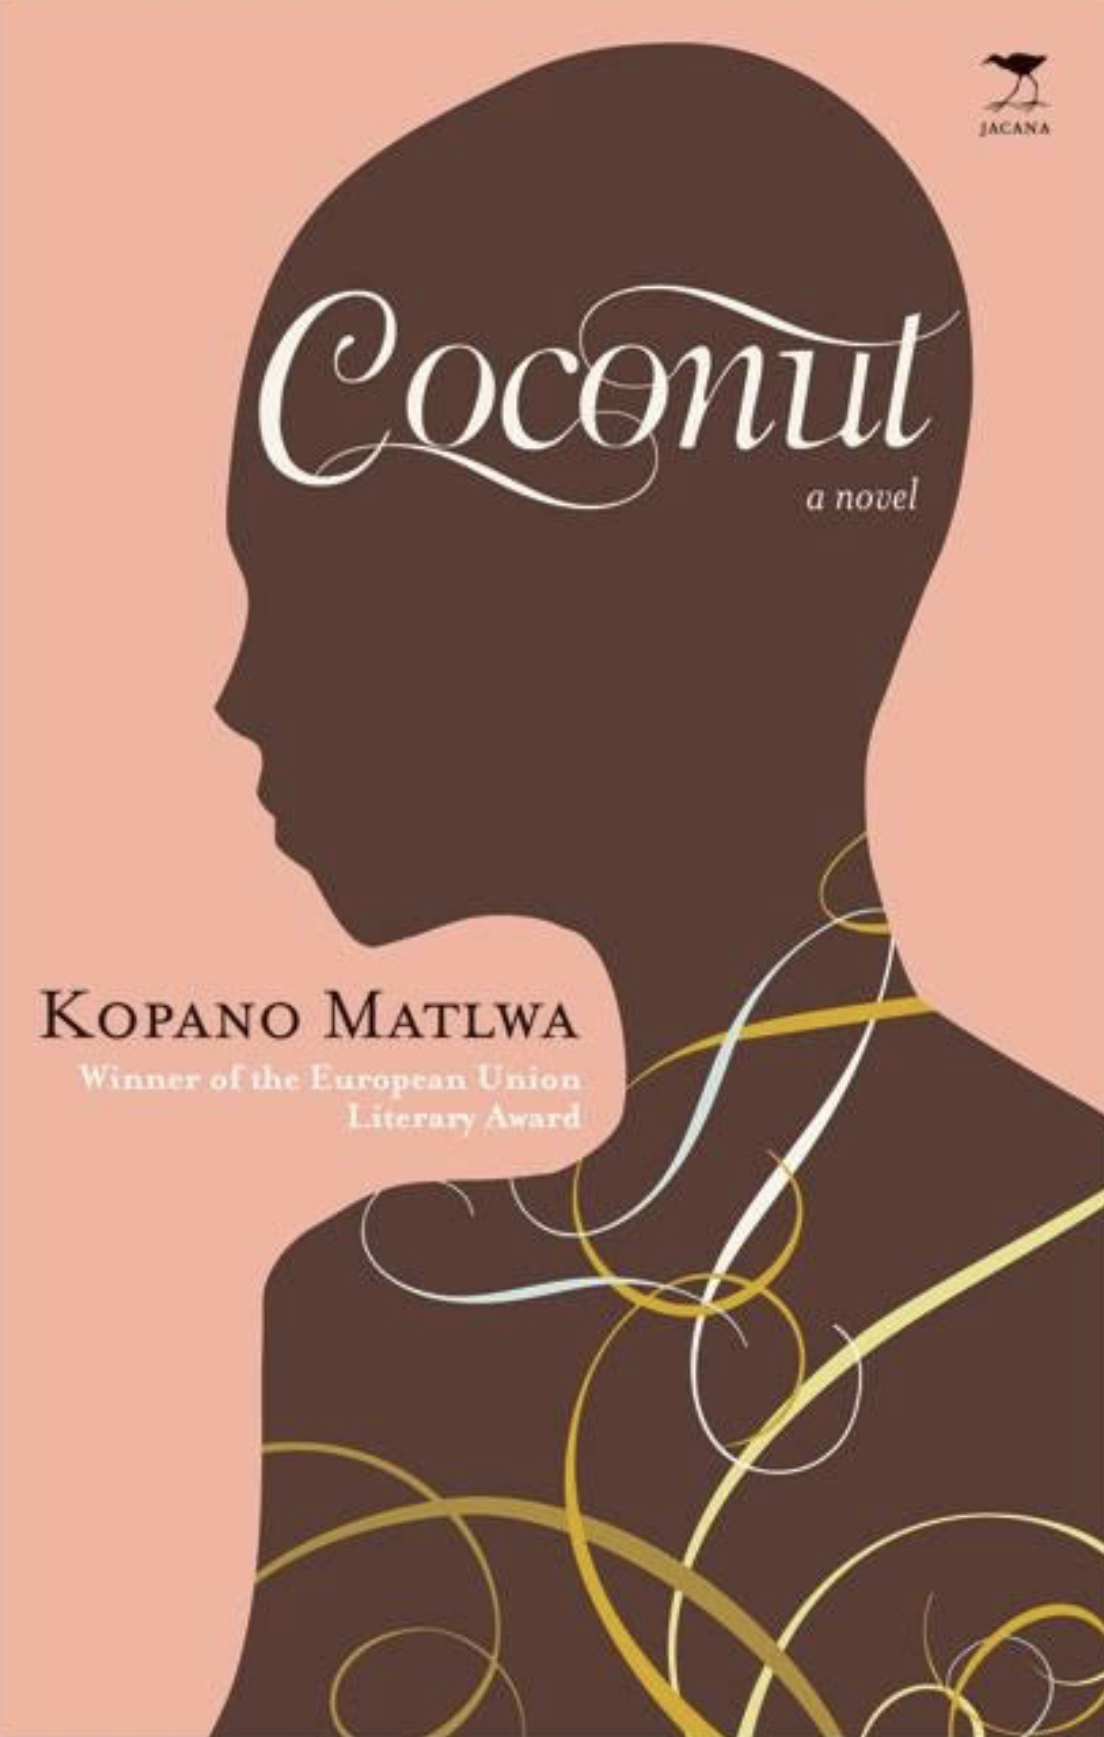 Coconut, by Kopano Matlwa